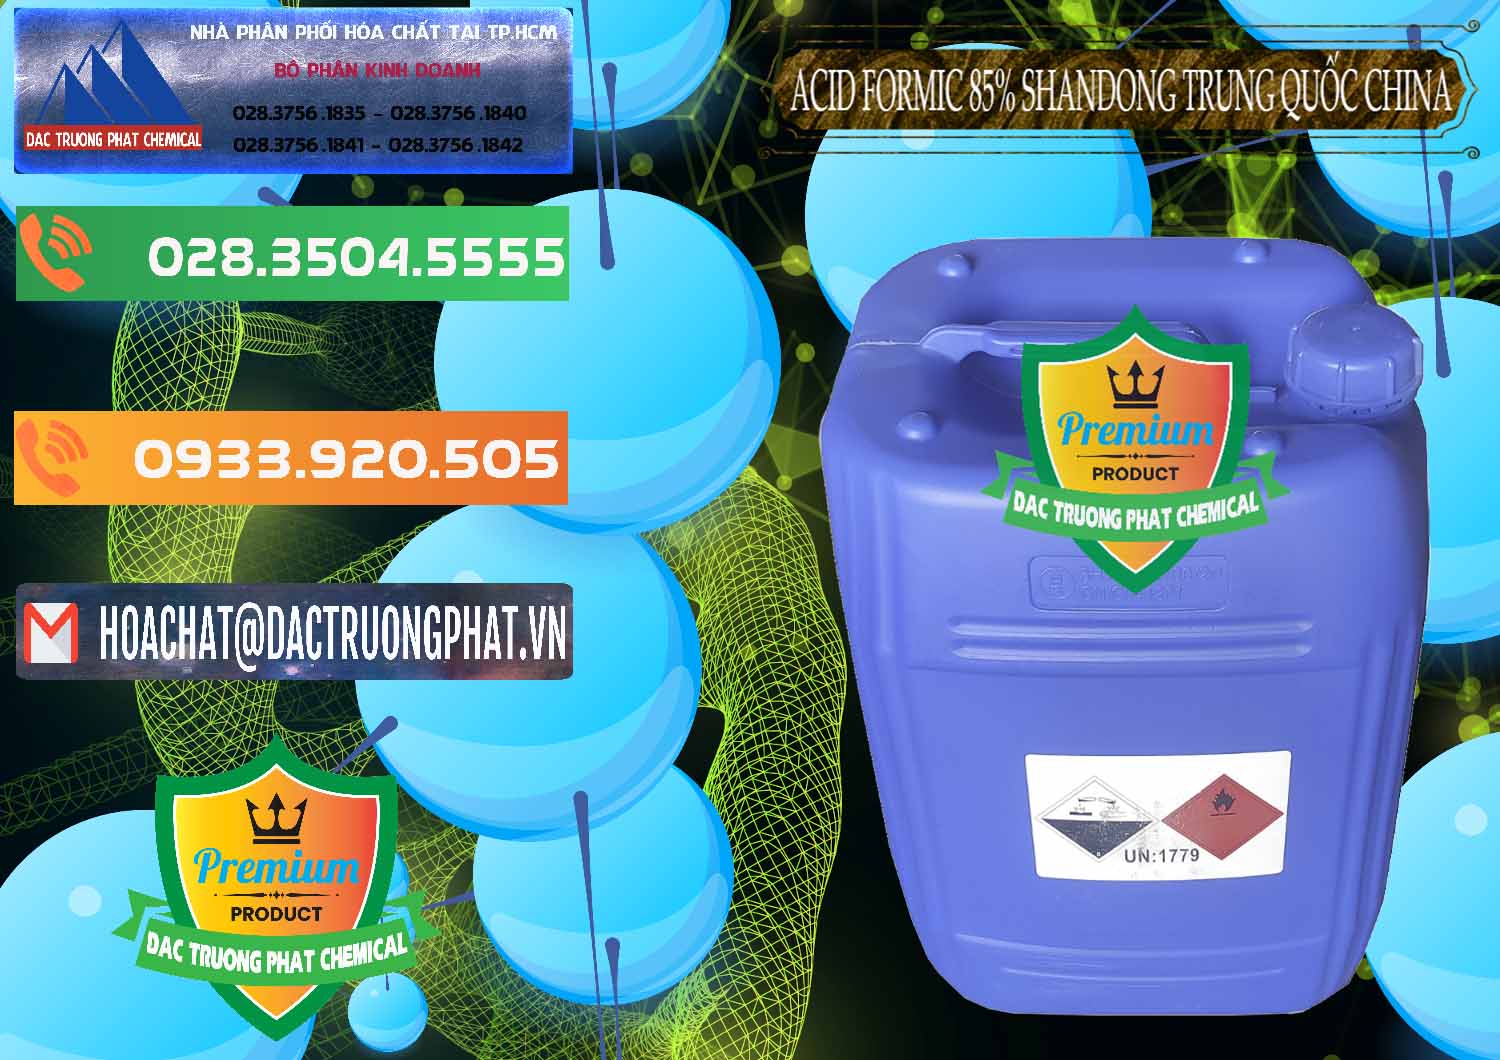 Đơn vị chuyên cung cấp và bán Acid Formic - Axit Formic 85% Shandong Trung Quốc China - 0235 - Cty cung ứng và phân phối hóa chất tại TP.HCM - hoachatxulynuoc.com.vn